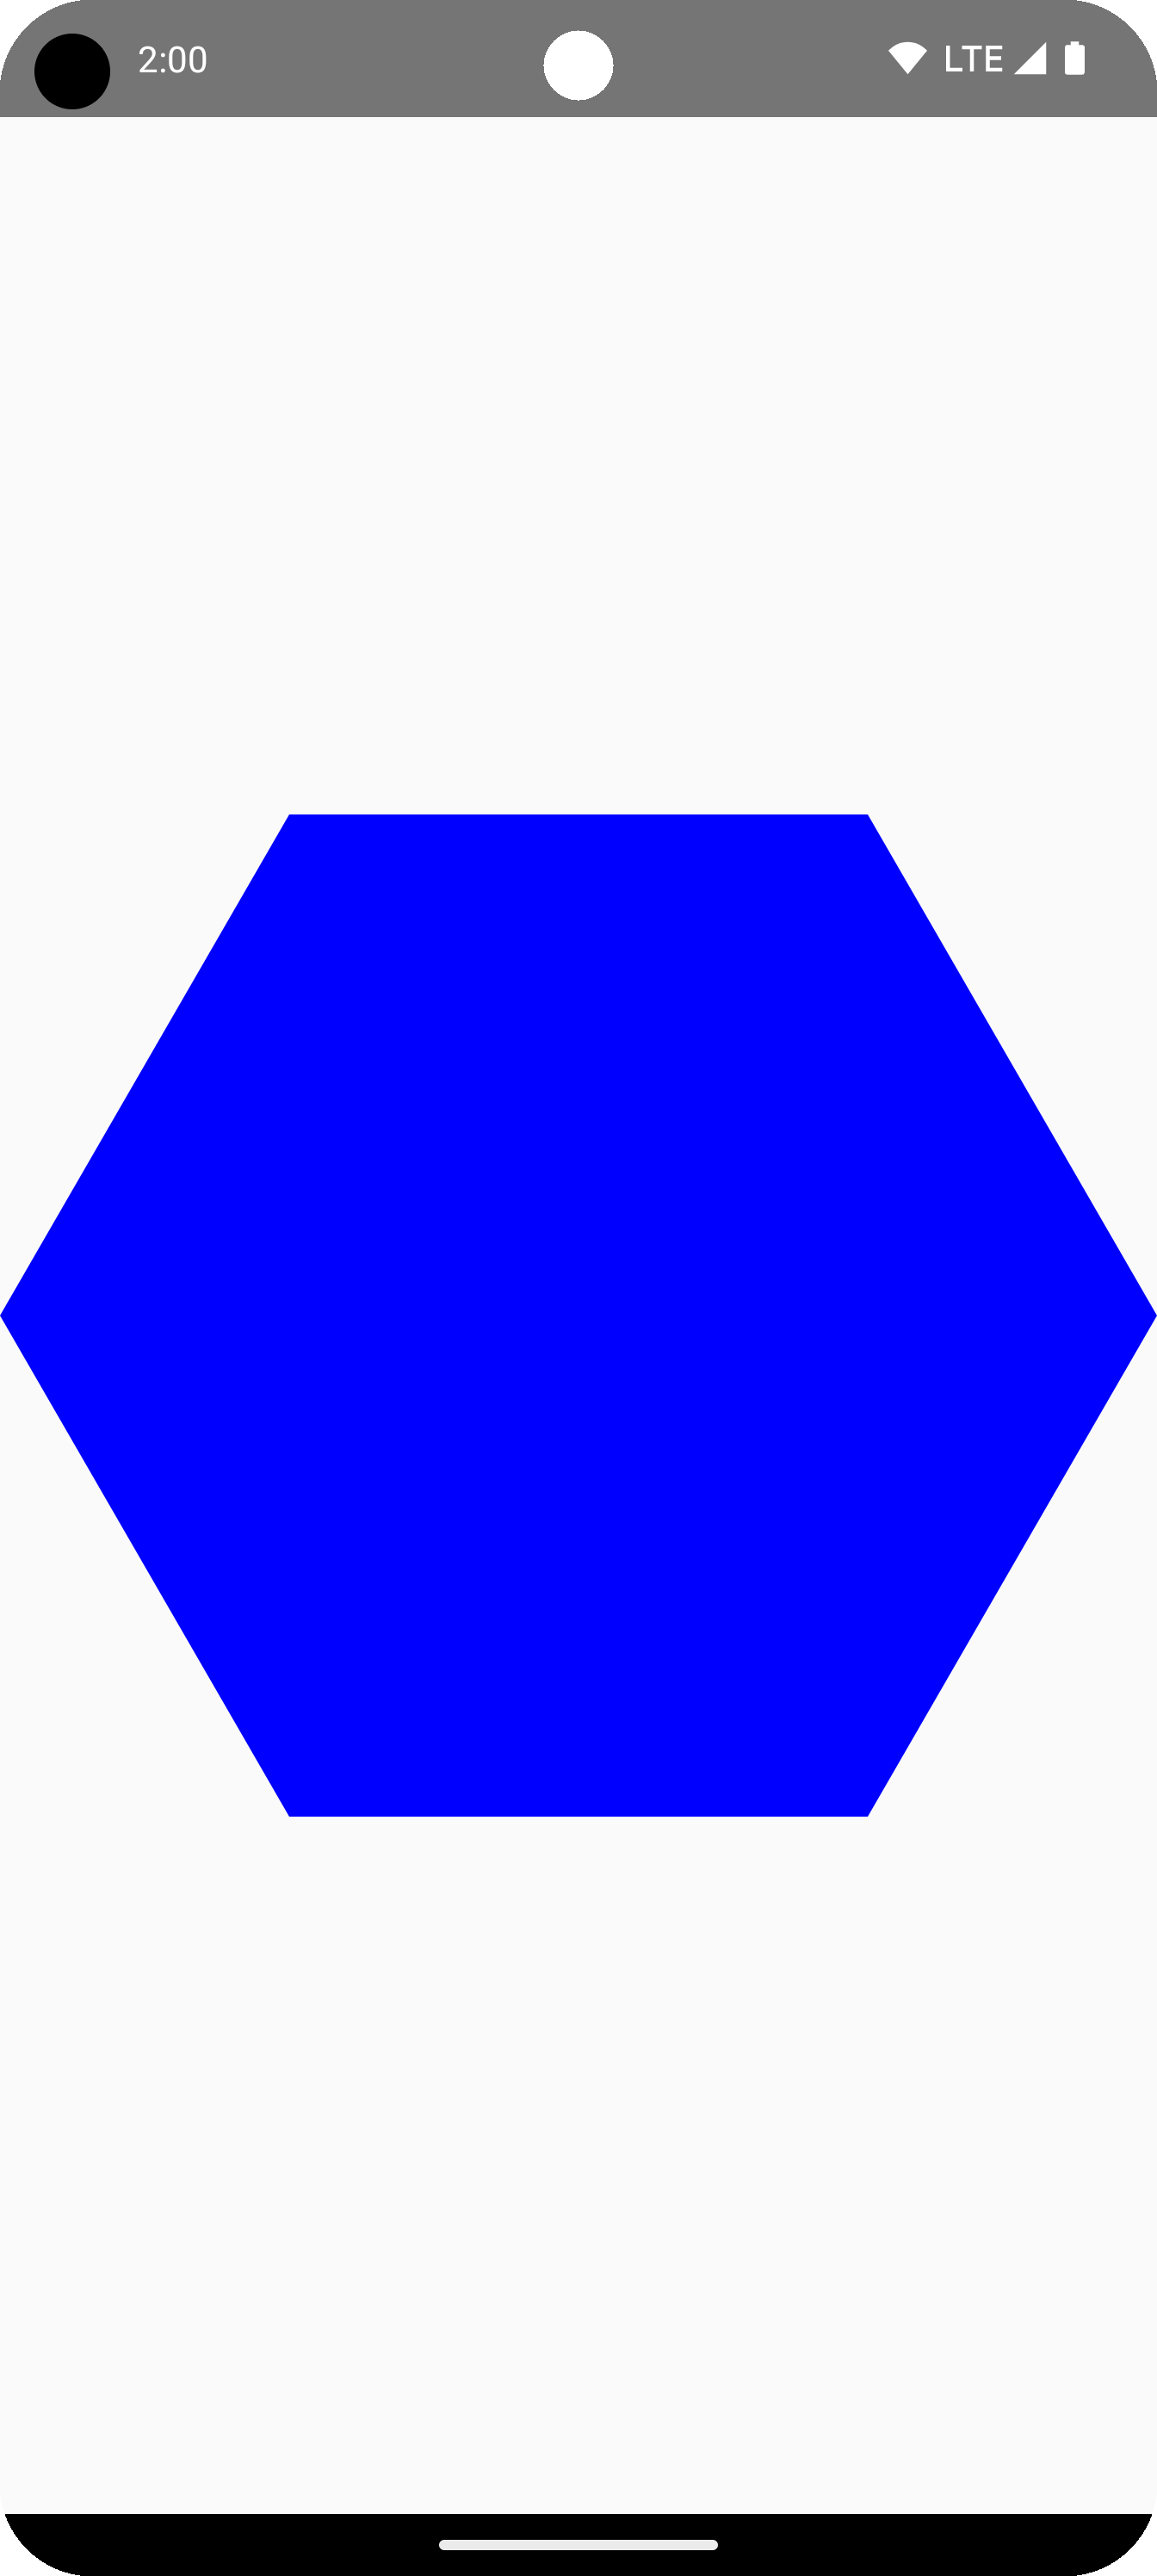 شش ضلعی آبی در مرکز منطقه طراحی